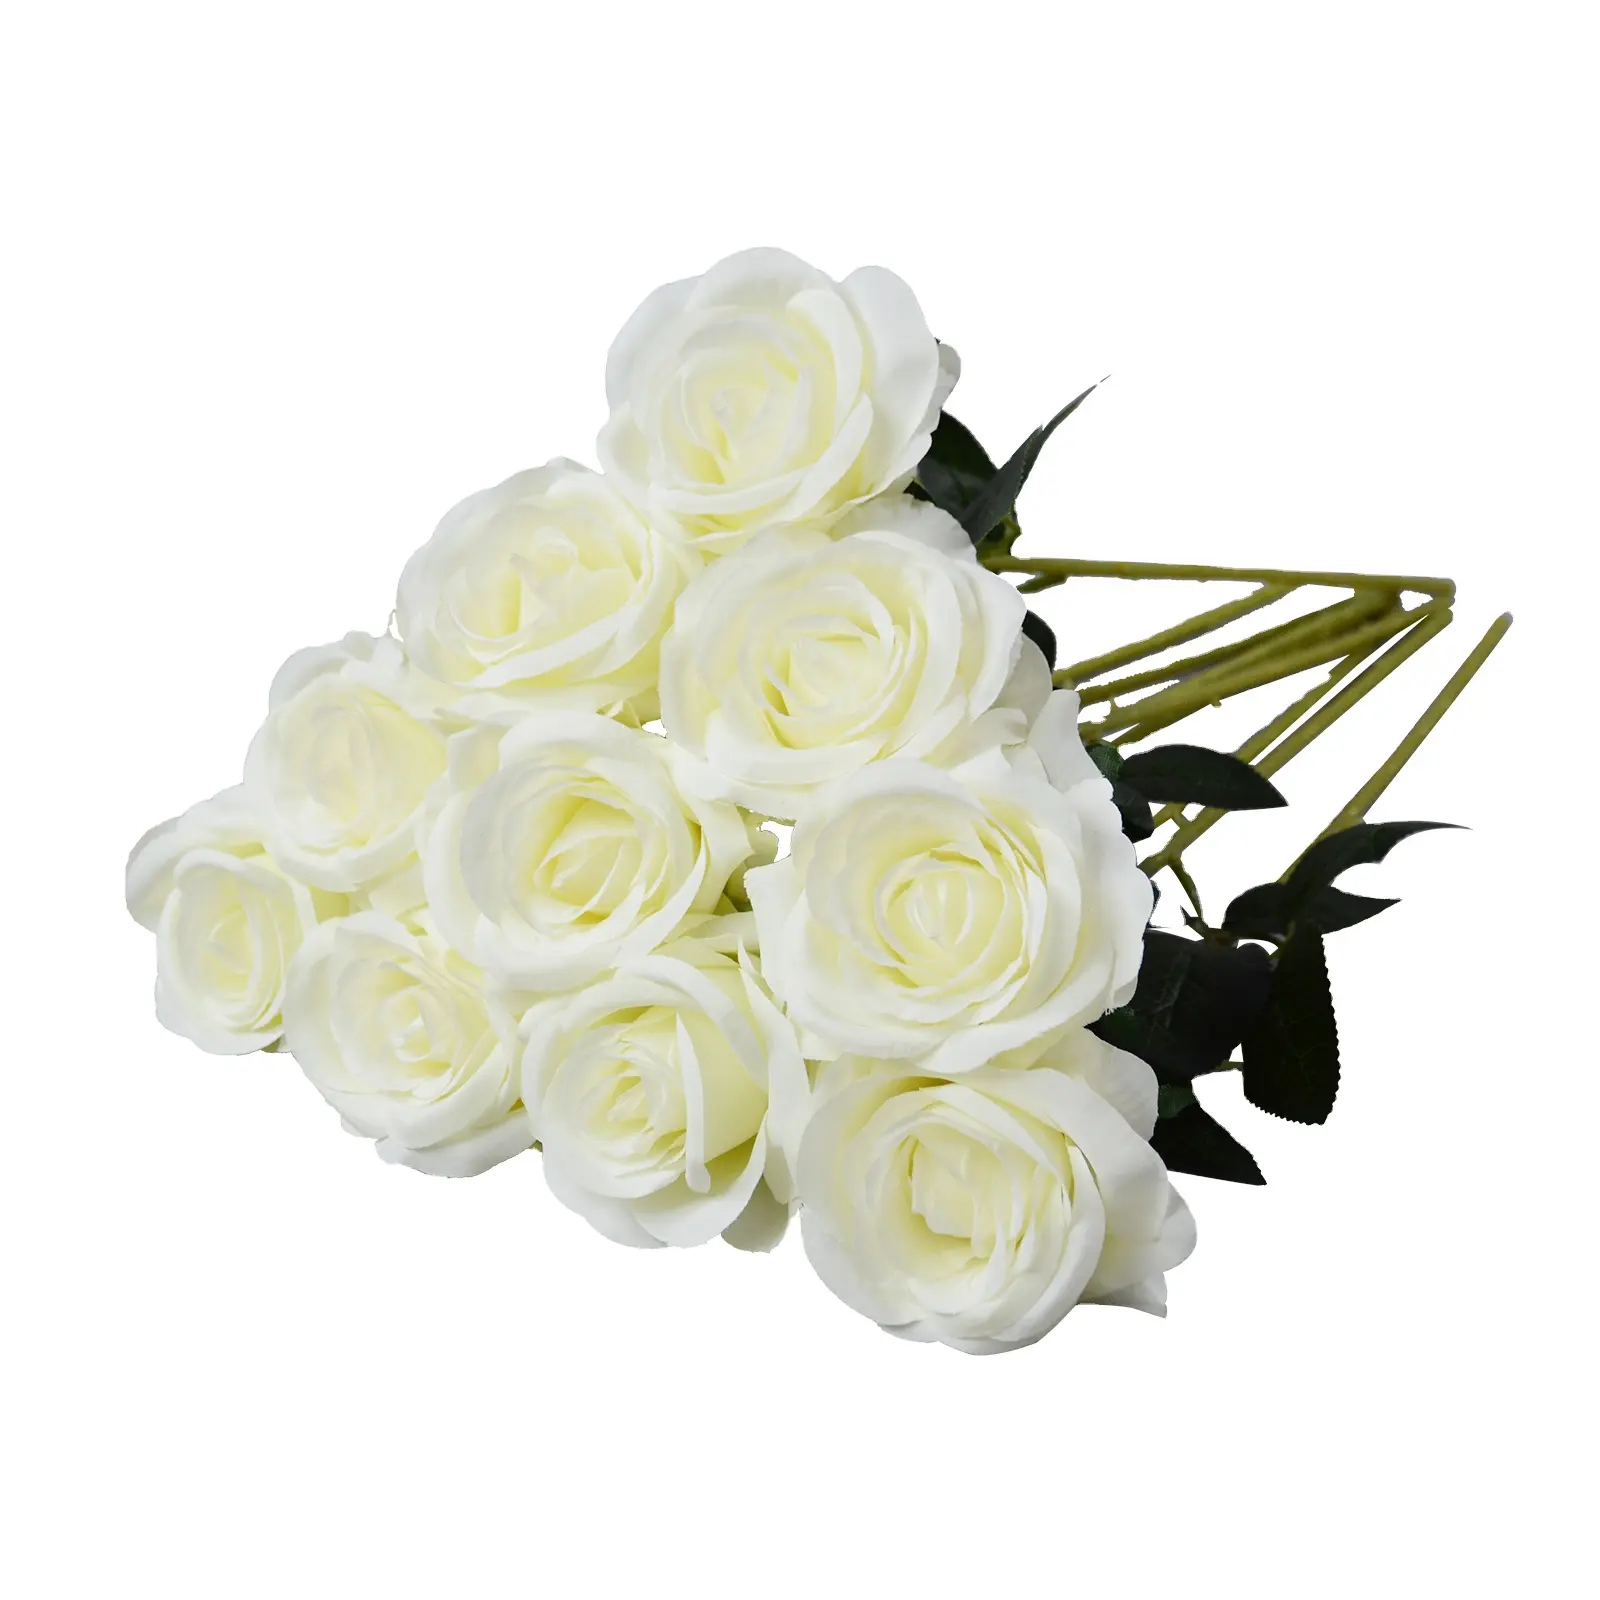 Groothandel Hete Verkoop Lange Steel Zijden Bloemen Witte Roos Home Decor Bruiloft Decoratie Lange Steel Rose